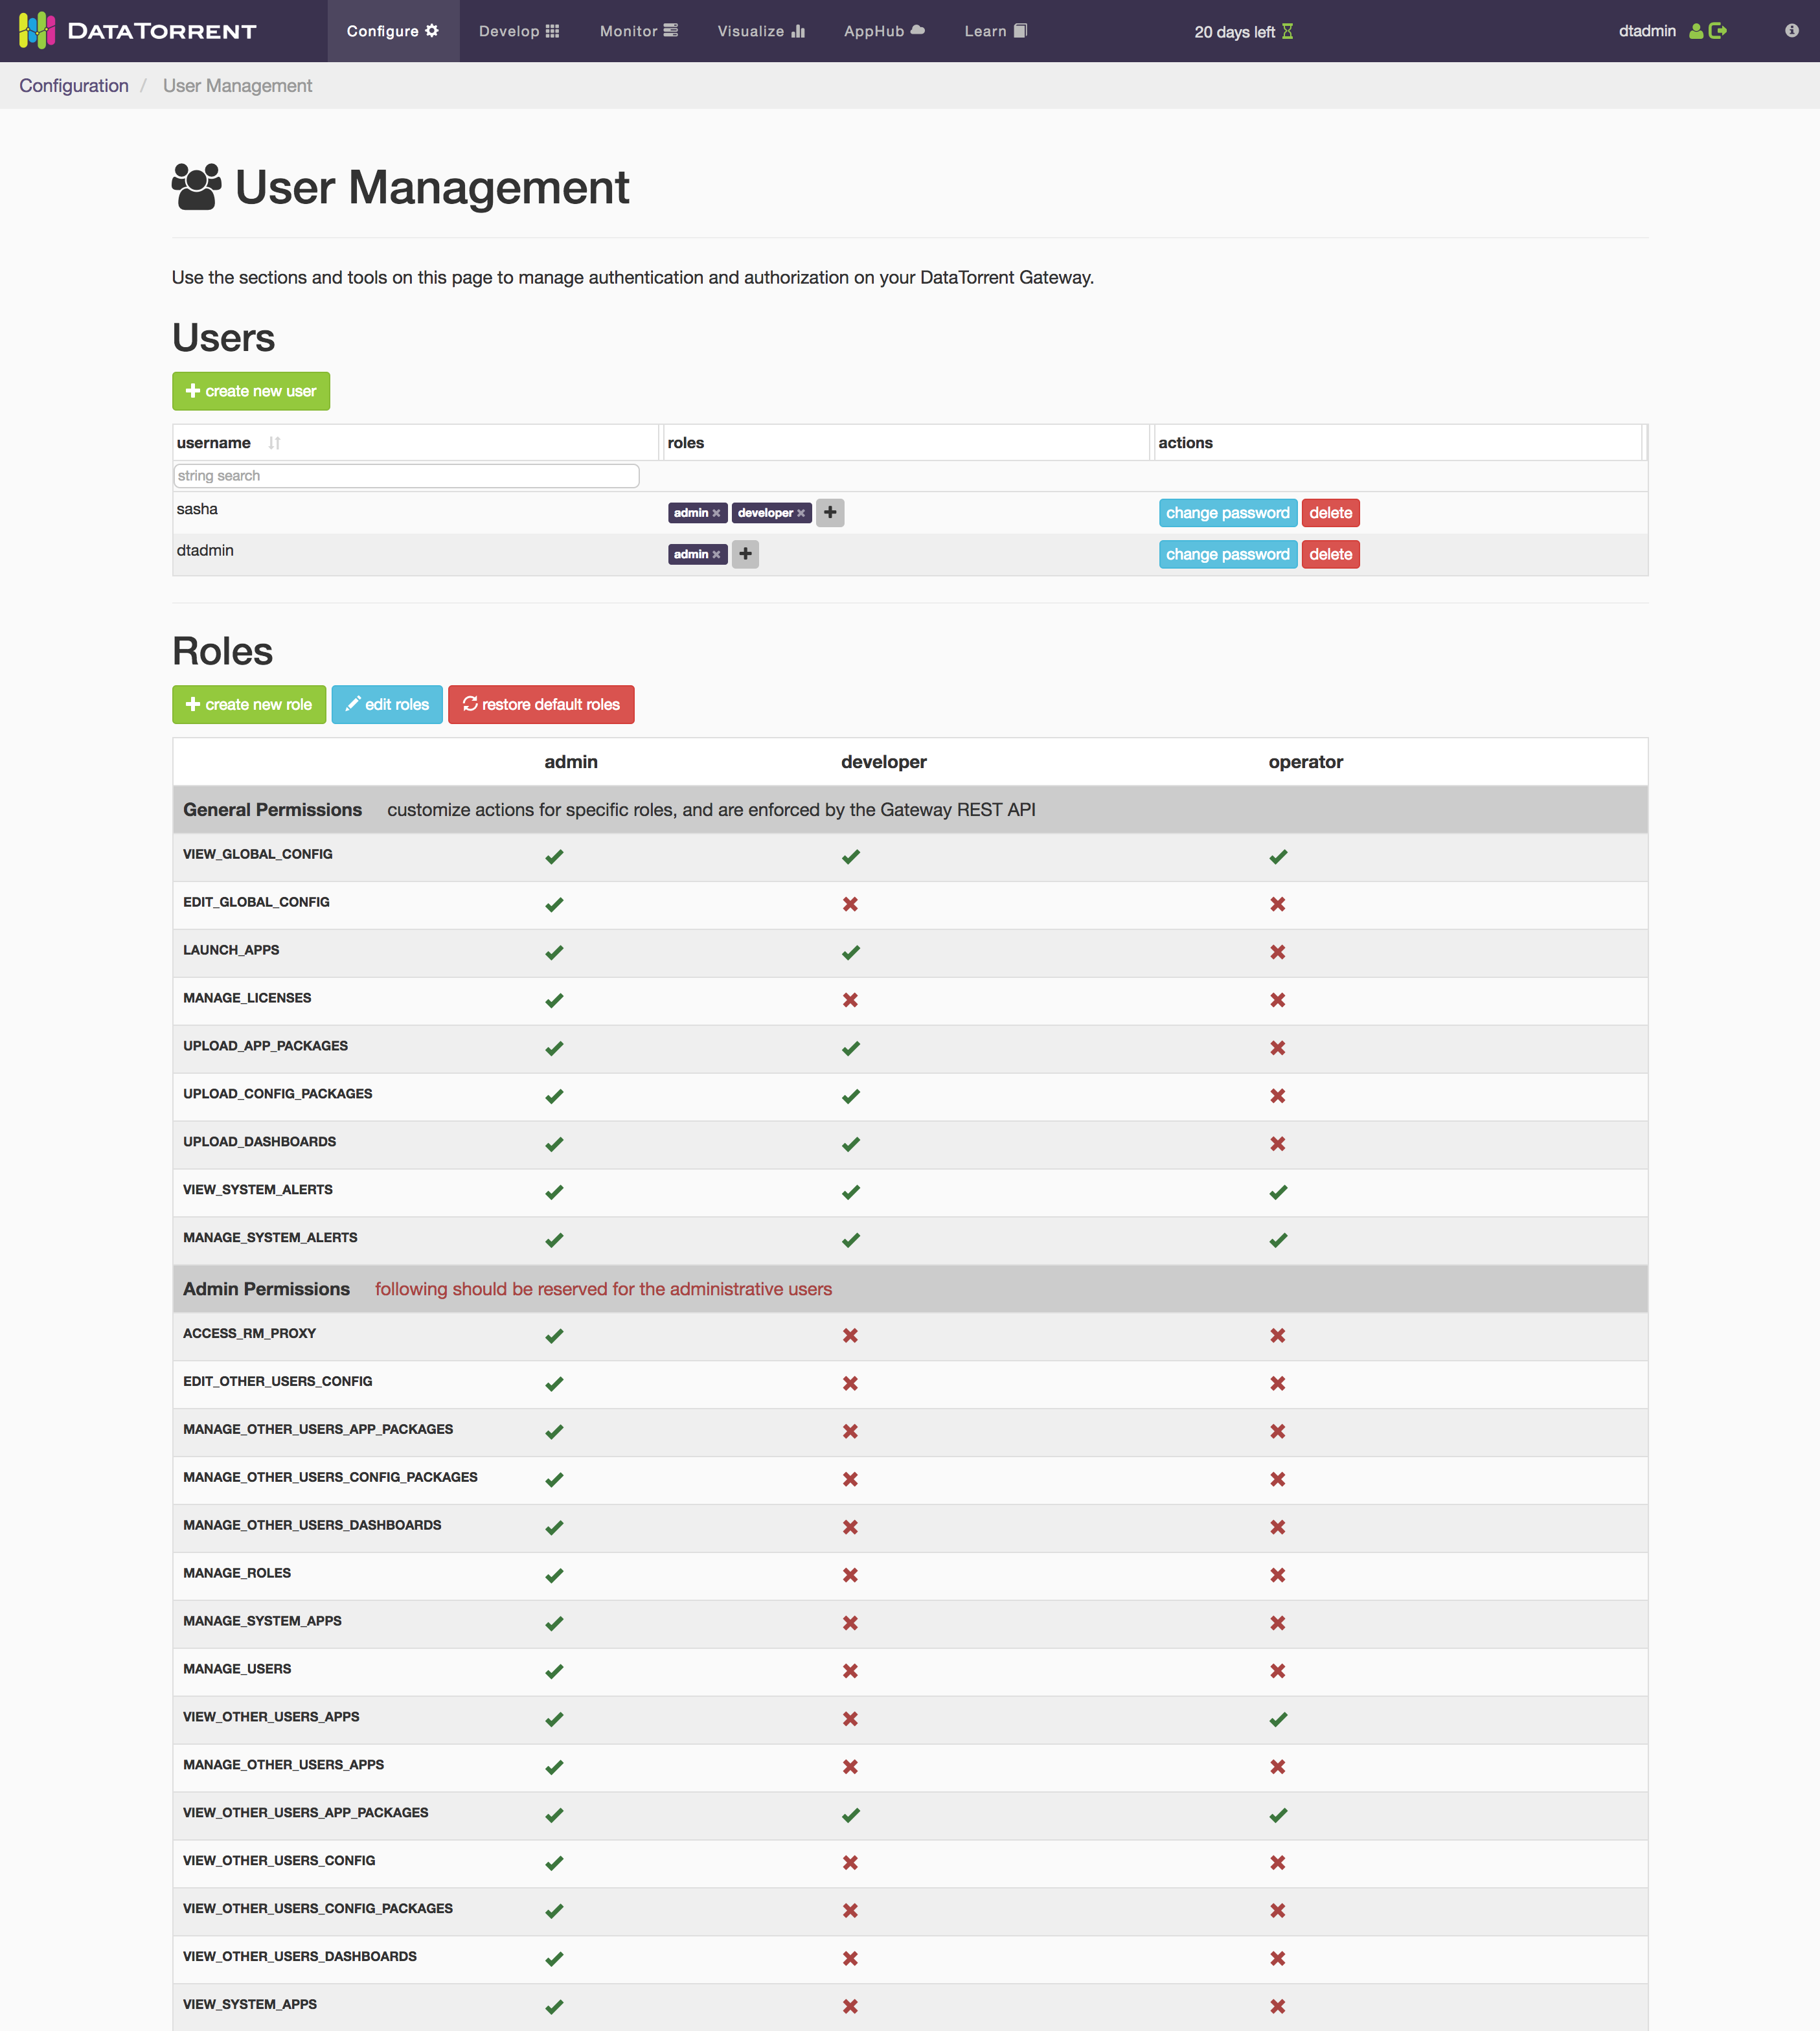 User Management Screen